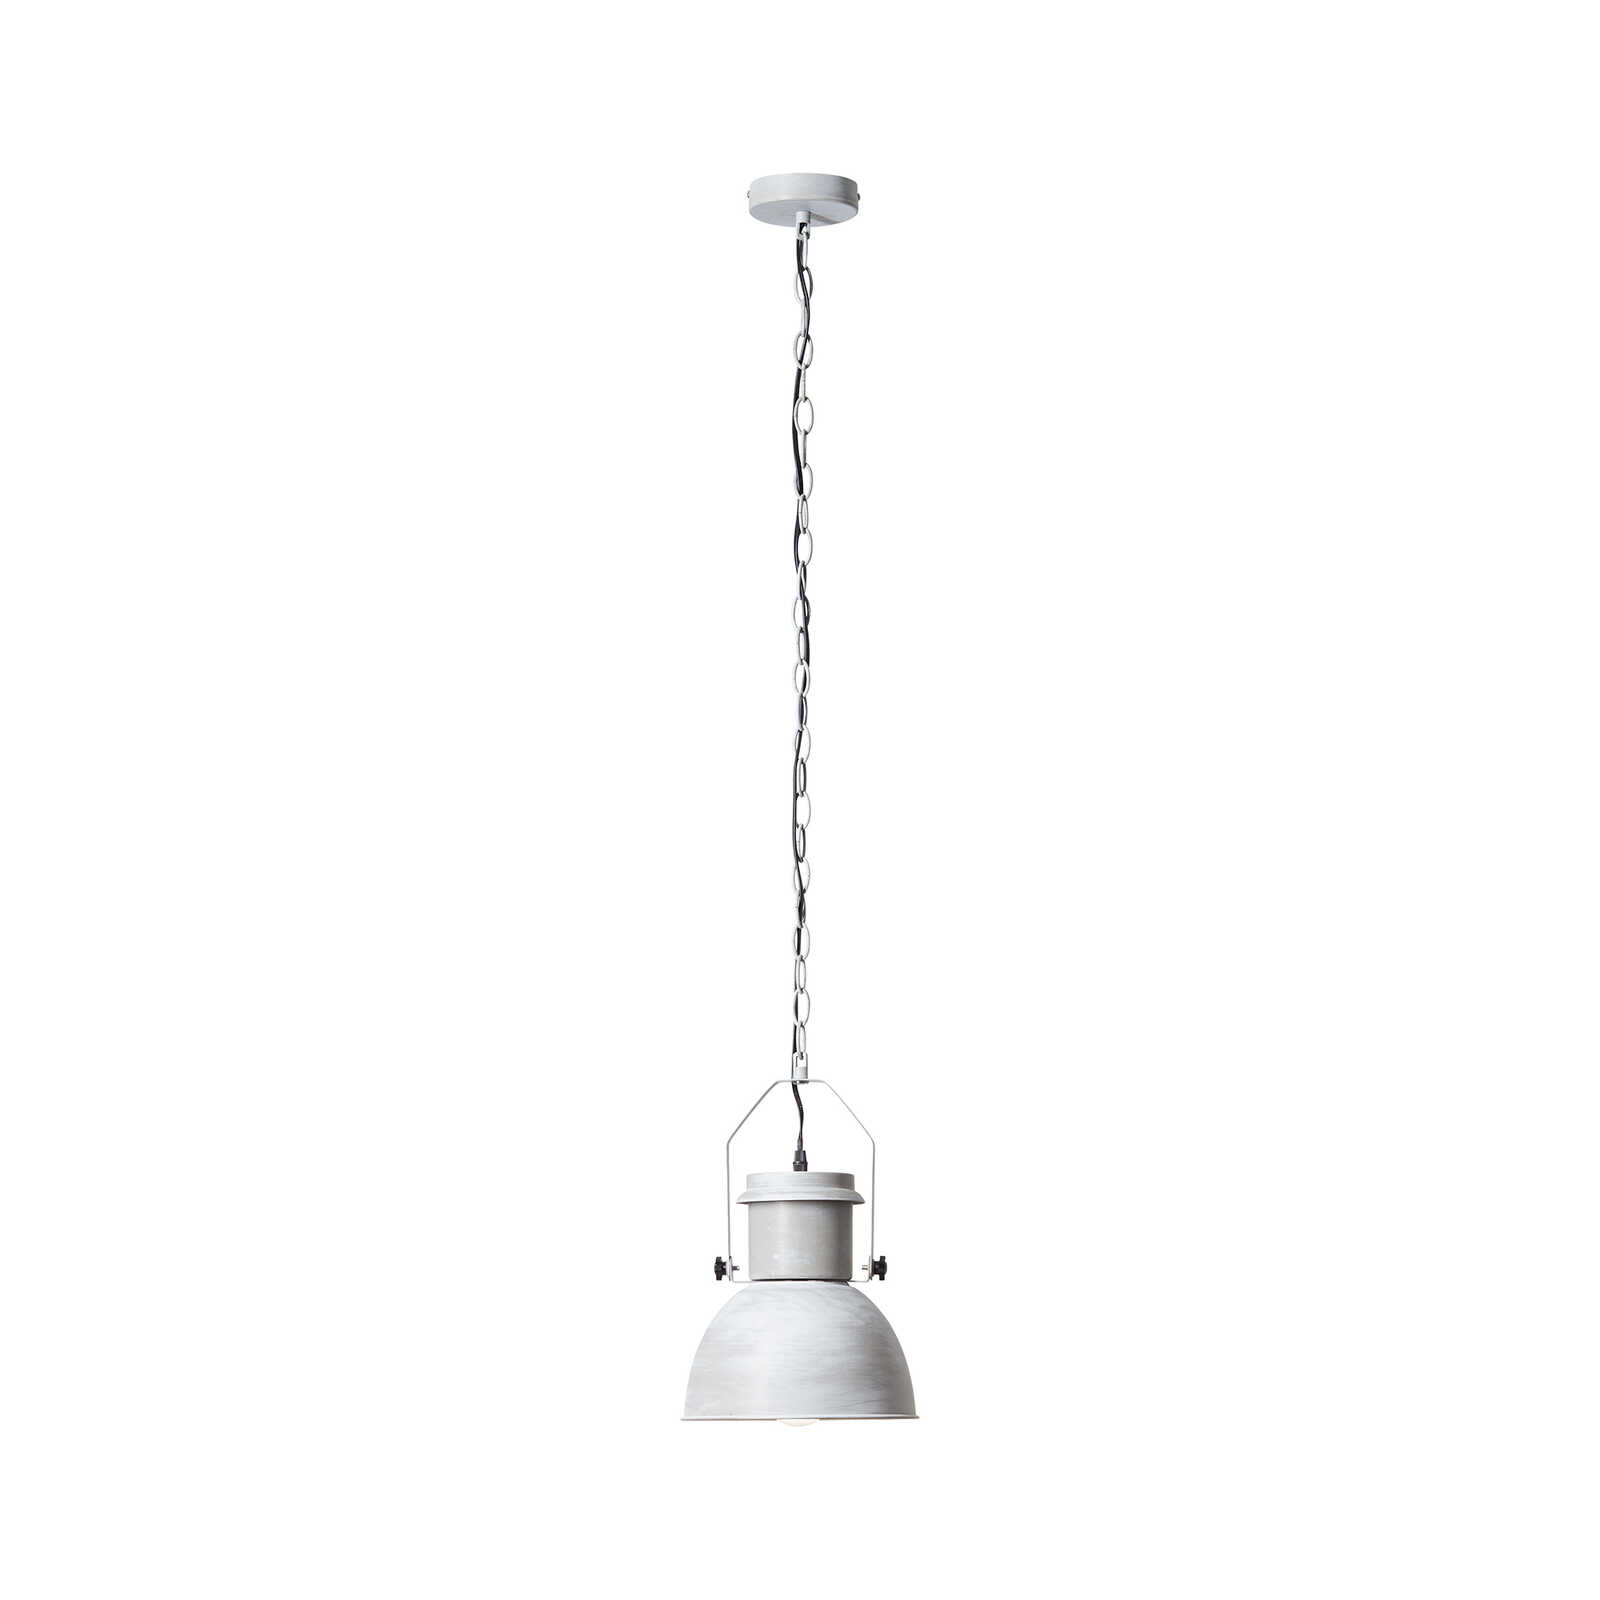 Metalen hanglamp - Milo 1 - Grijs
